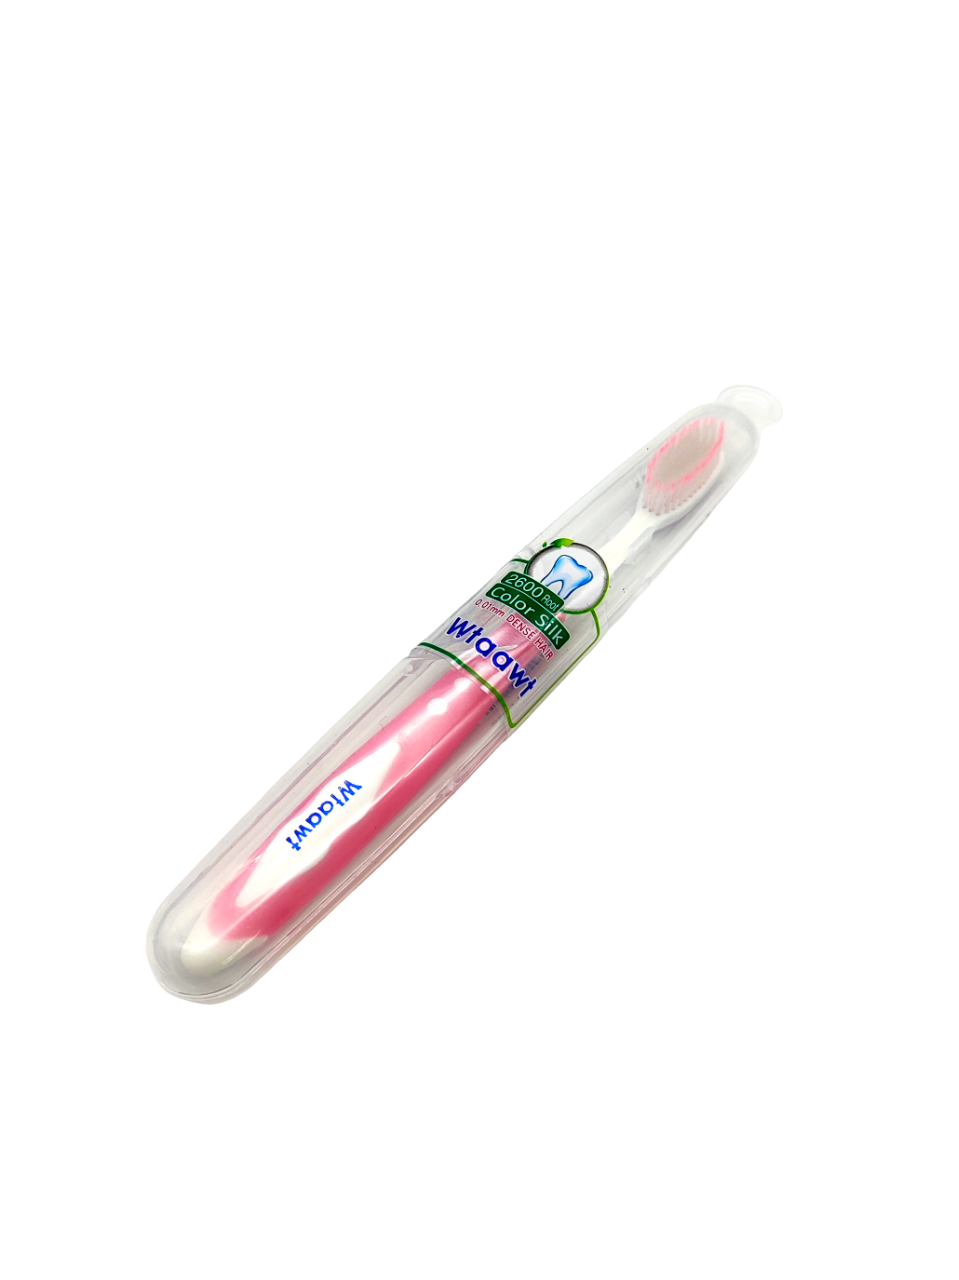 Зубная щетка Wtaawt в футляре Цвет розовый зубная щетка для зубных протезов tepe denture цвет в ассортименте